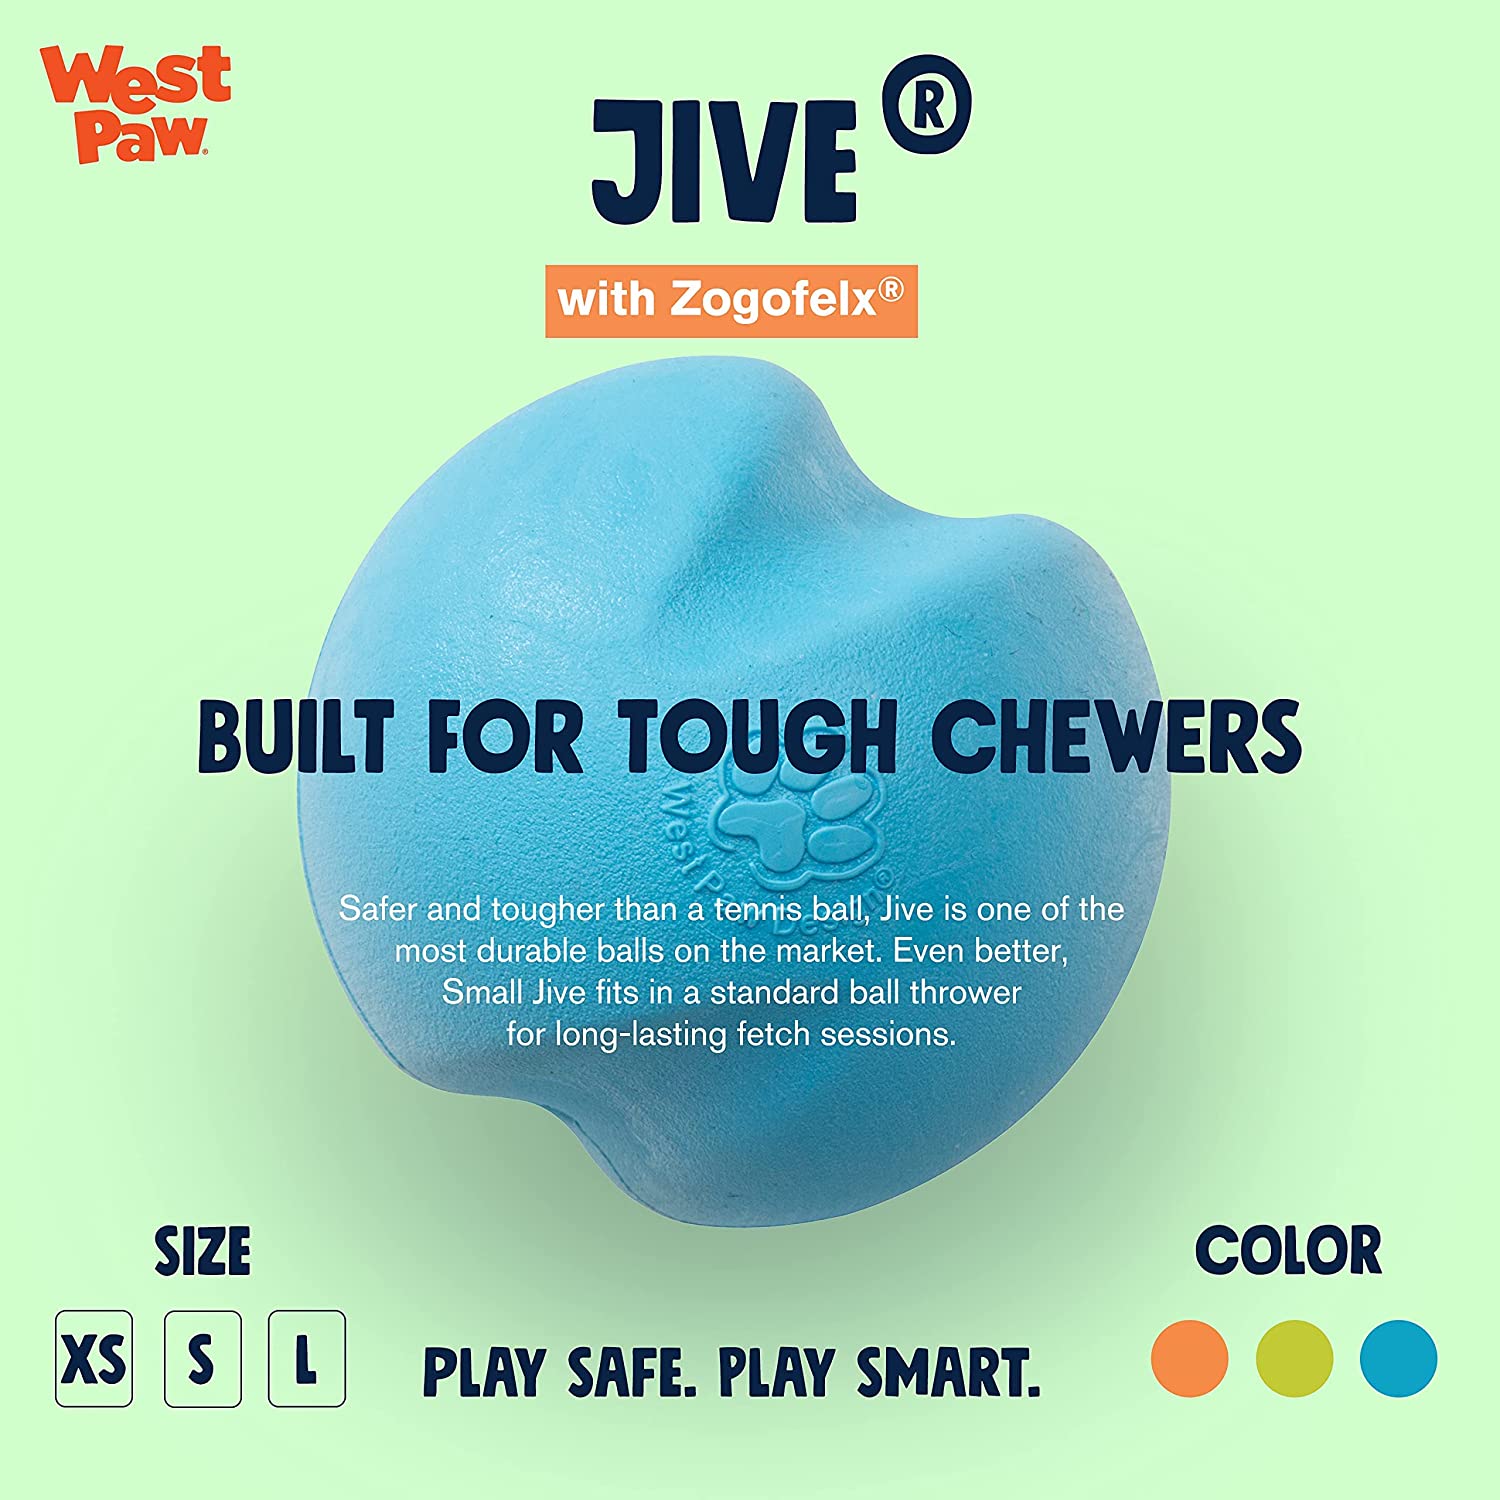 Jive, Zogoflex "For Tough Chewers"